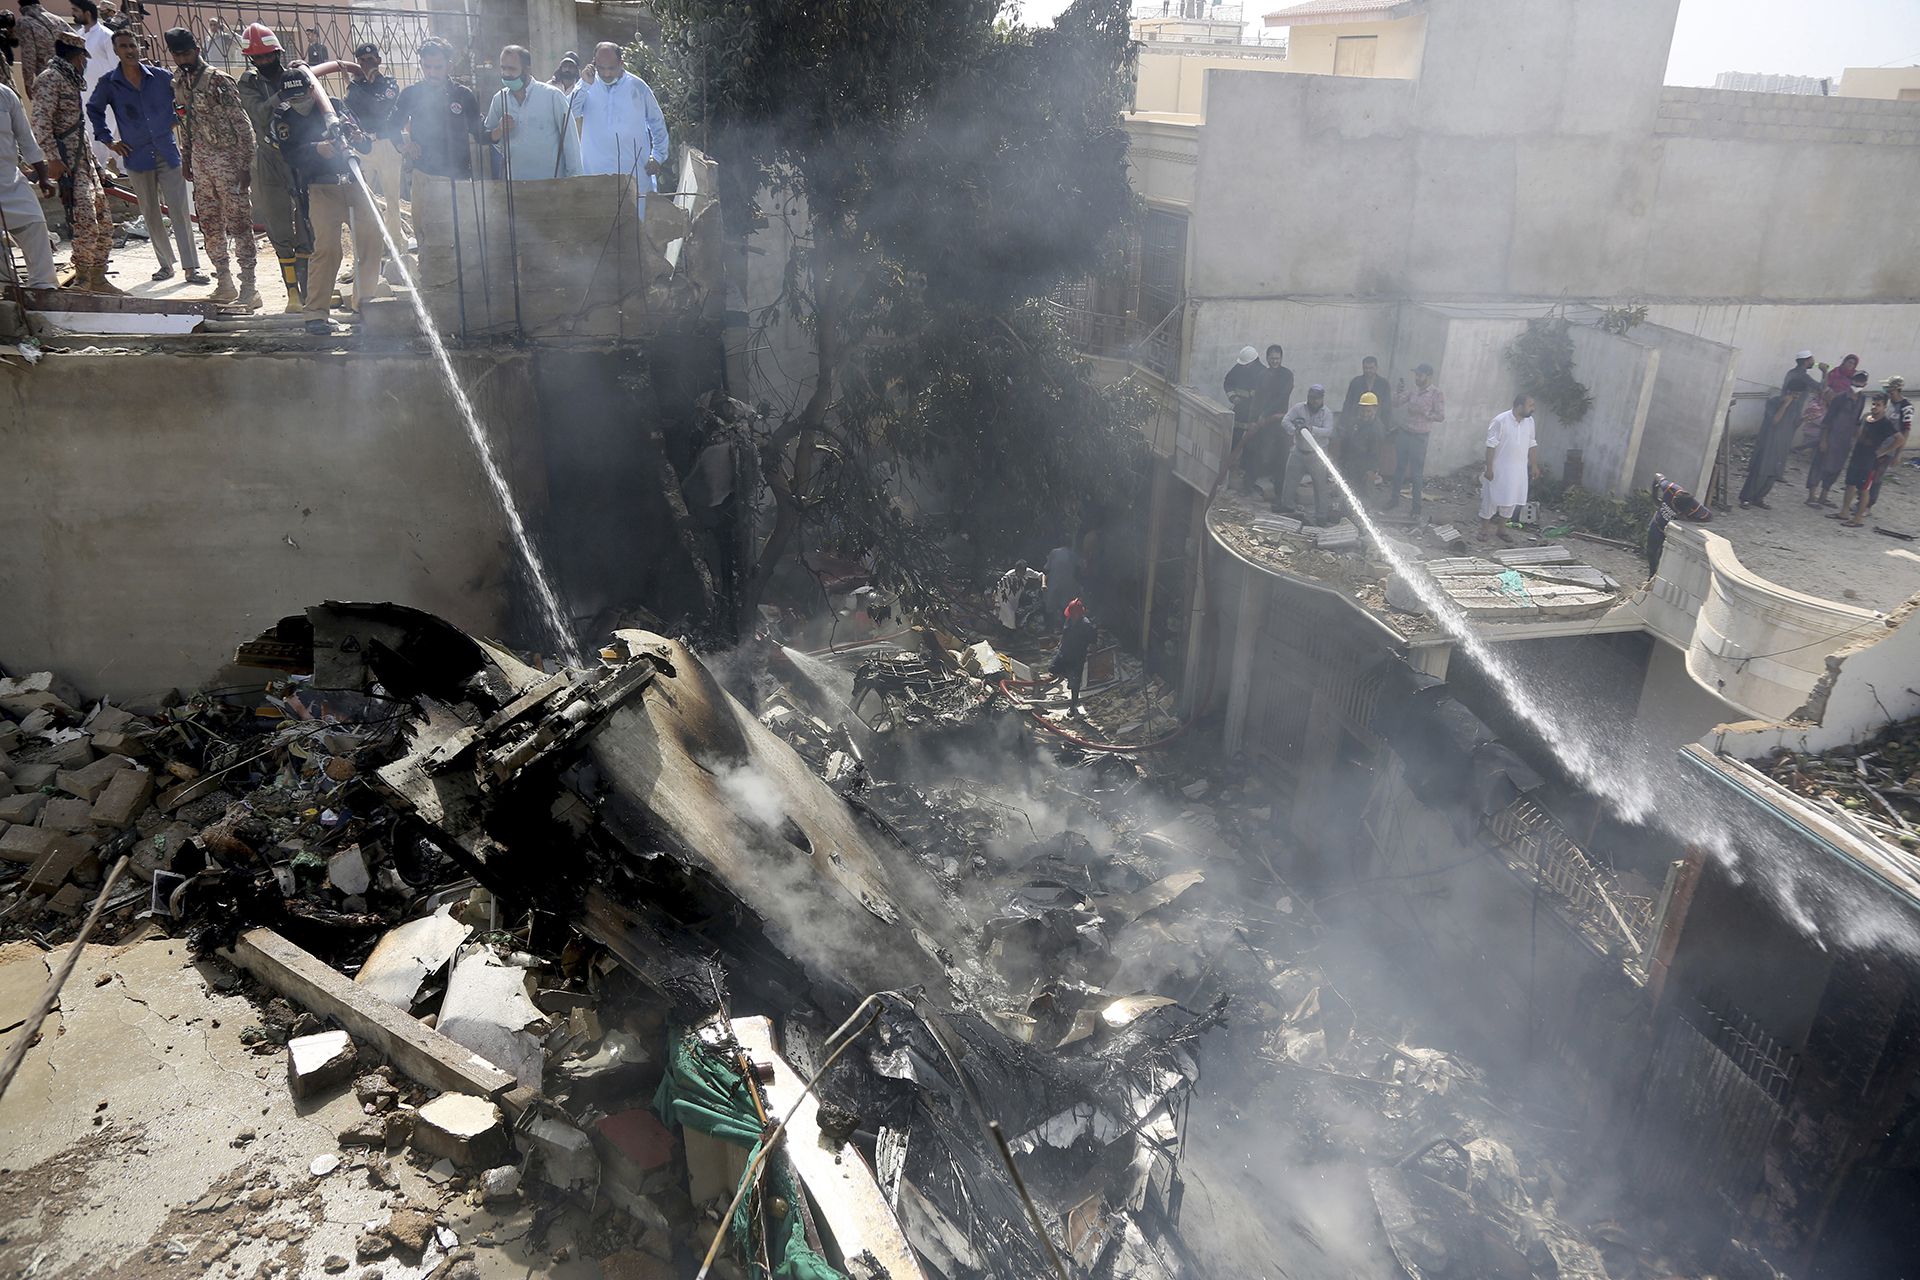 El país asiático vivió en 2012 uno de sus peores tragedias aéreas, cuando 138 personas murieron en el accidente de un avión cerca de Islamabad (AP Photo/Fareed Khan)